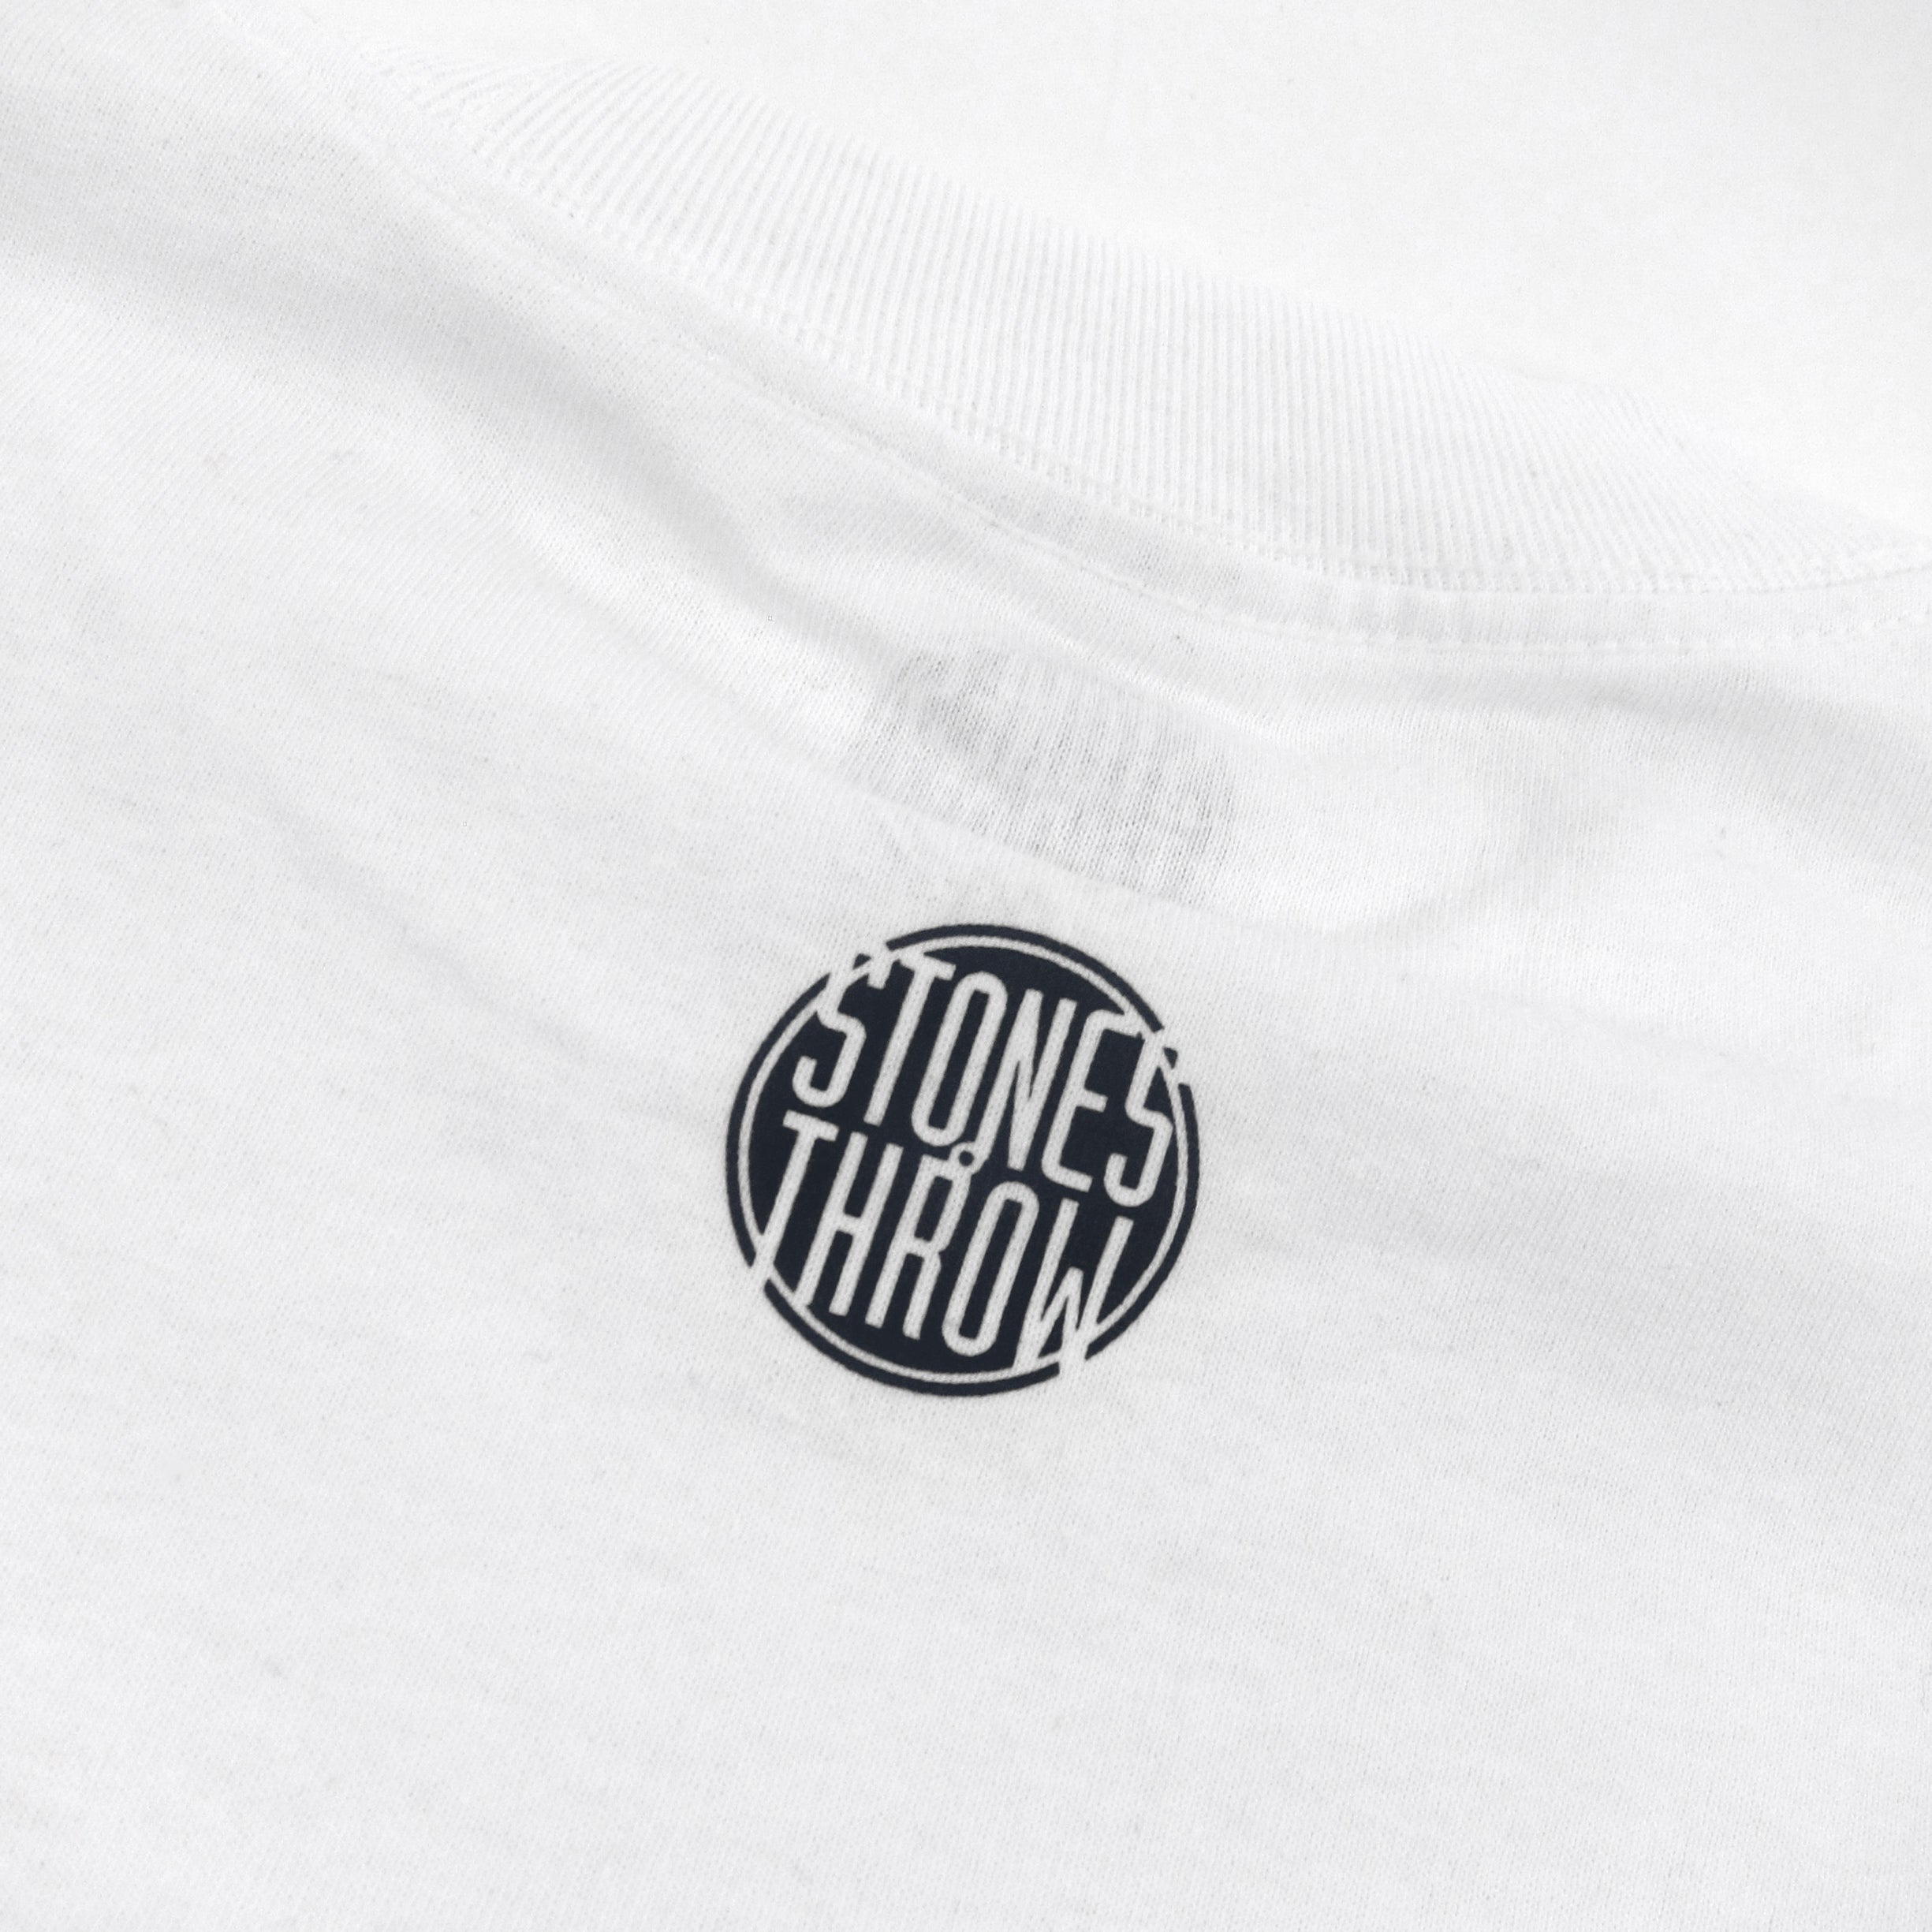 Stones Throw: Dilla Donuts Stencil Shirt - White / Black — TurntableLab.com